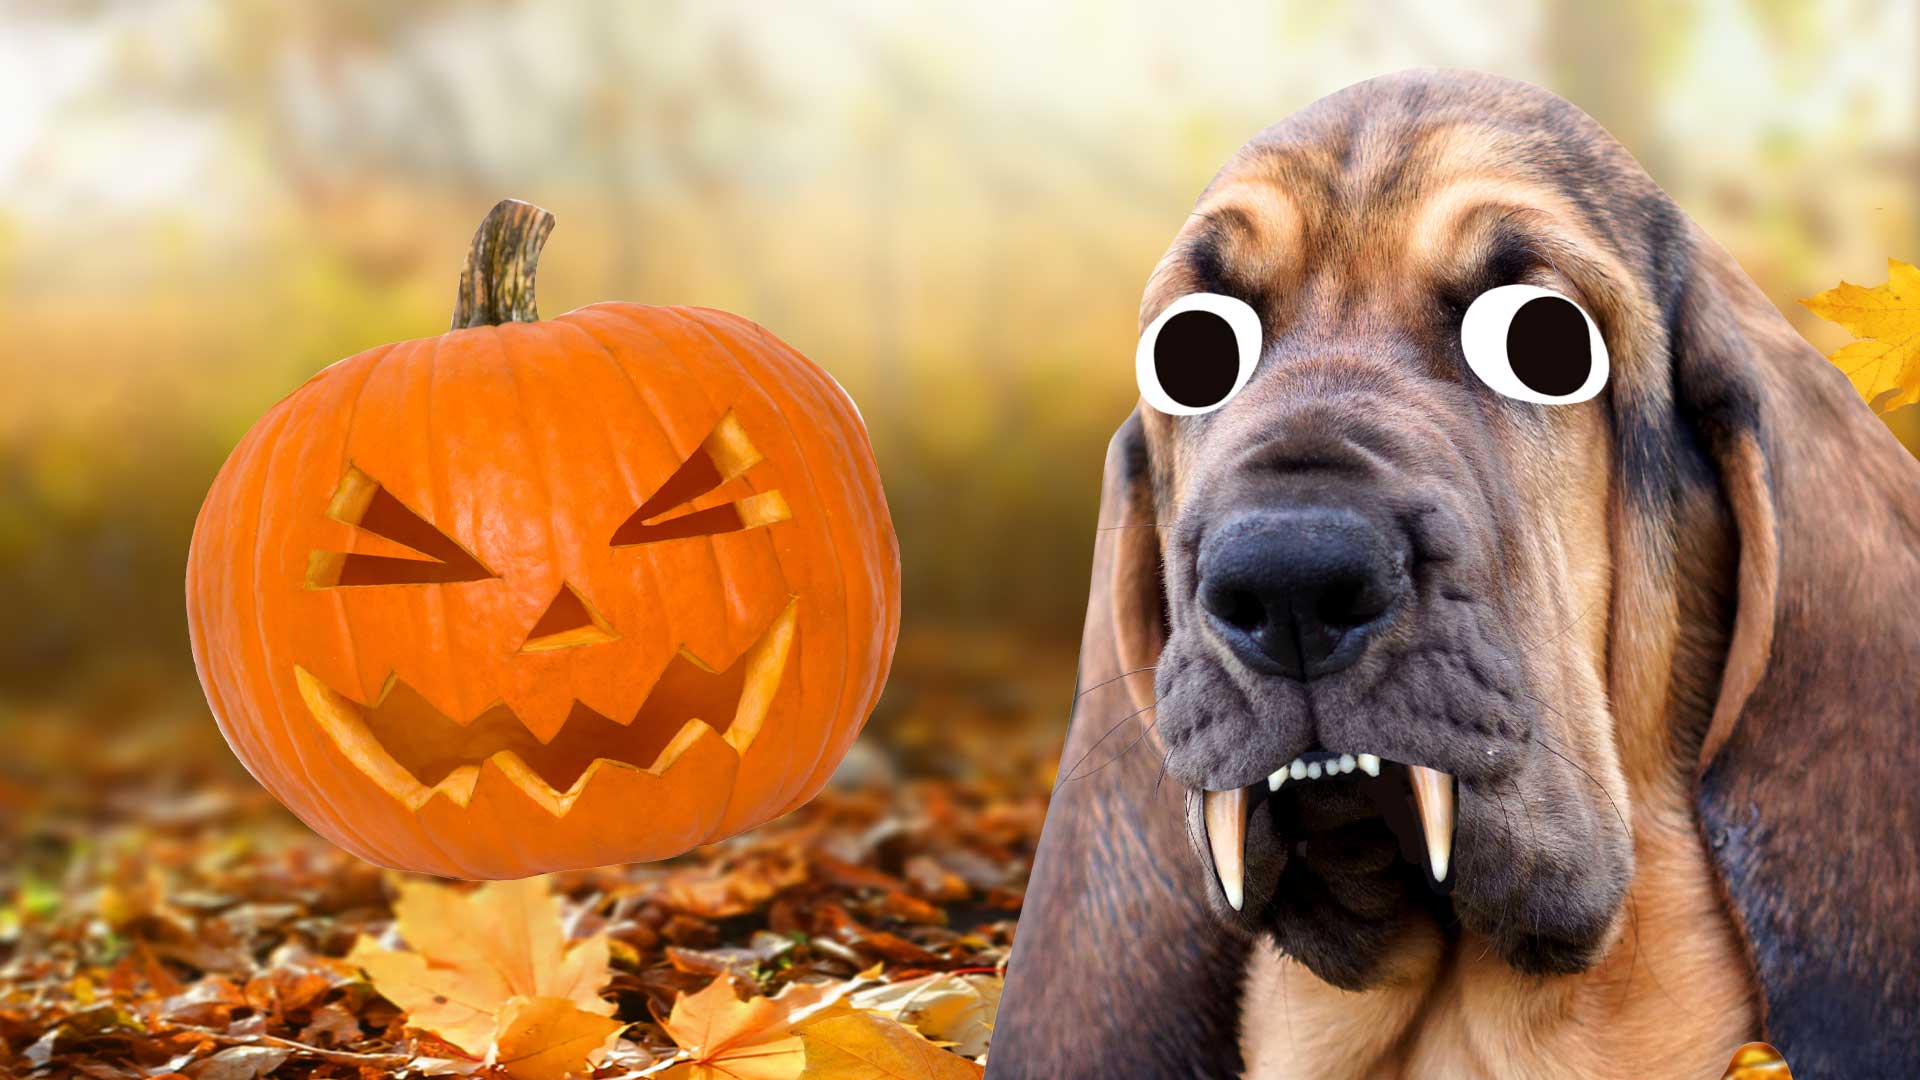 A pumpkin and a dog